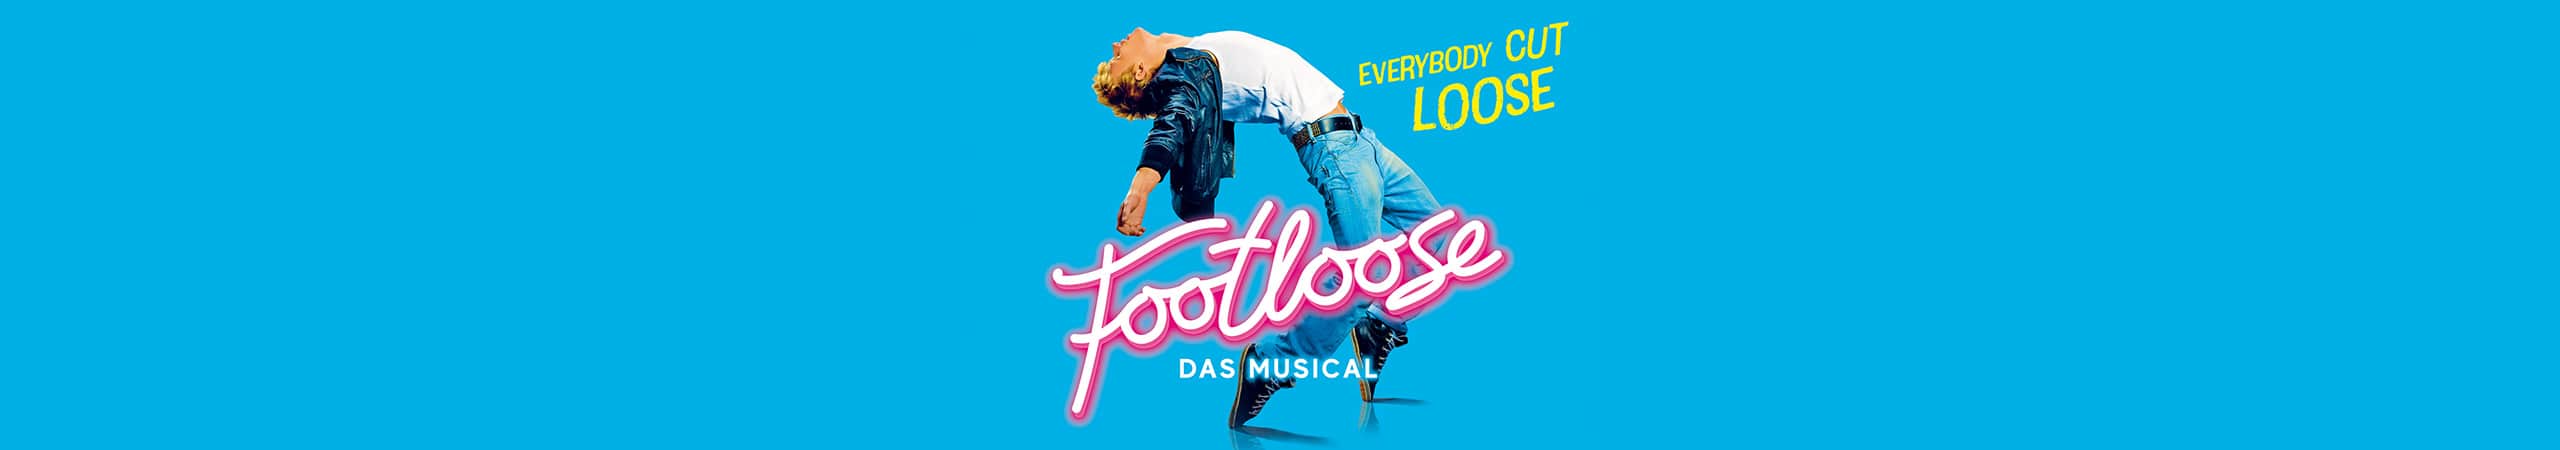 Bannermotiv für Musical Show Footloose in Bremen im Metropol Theater